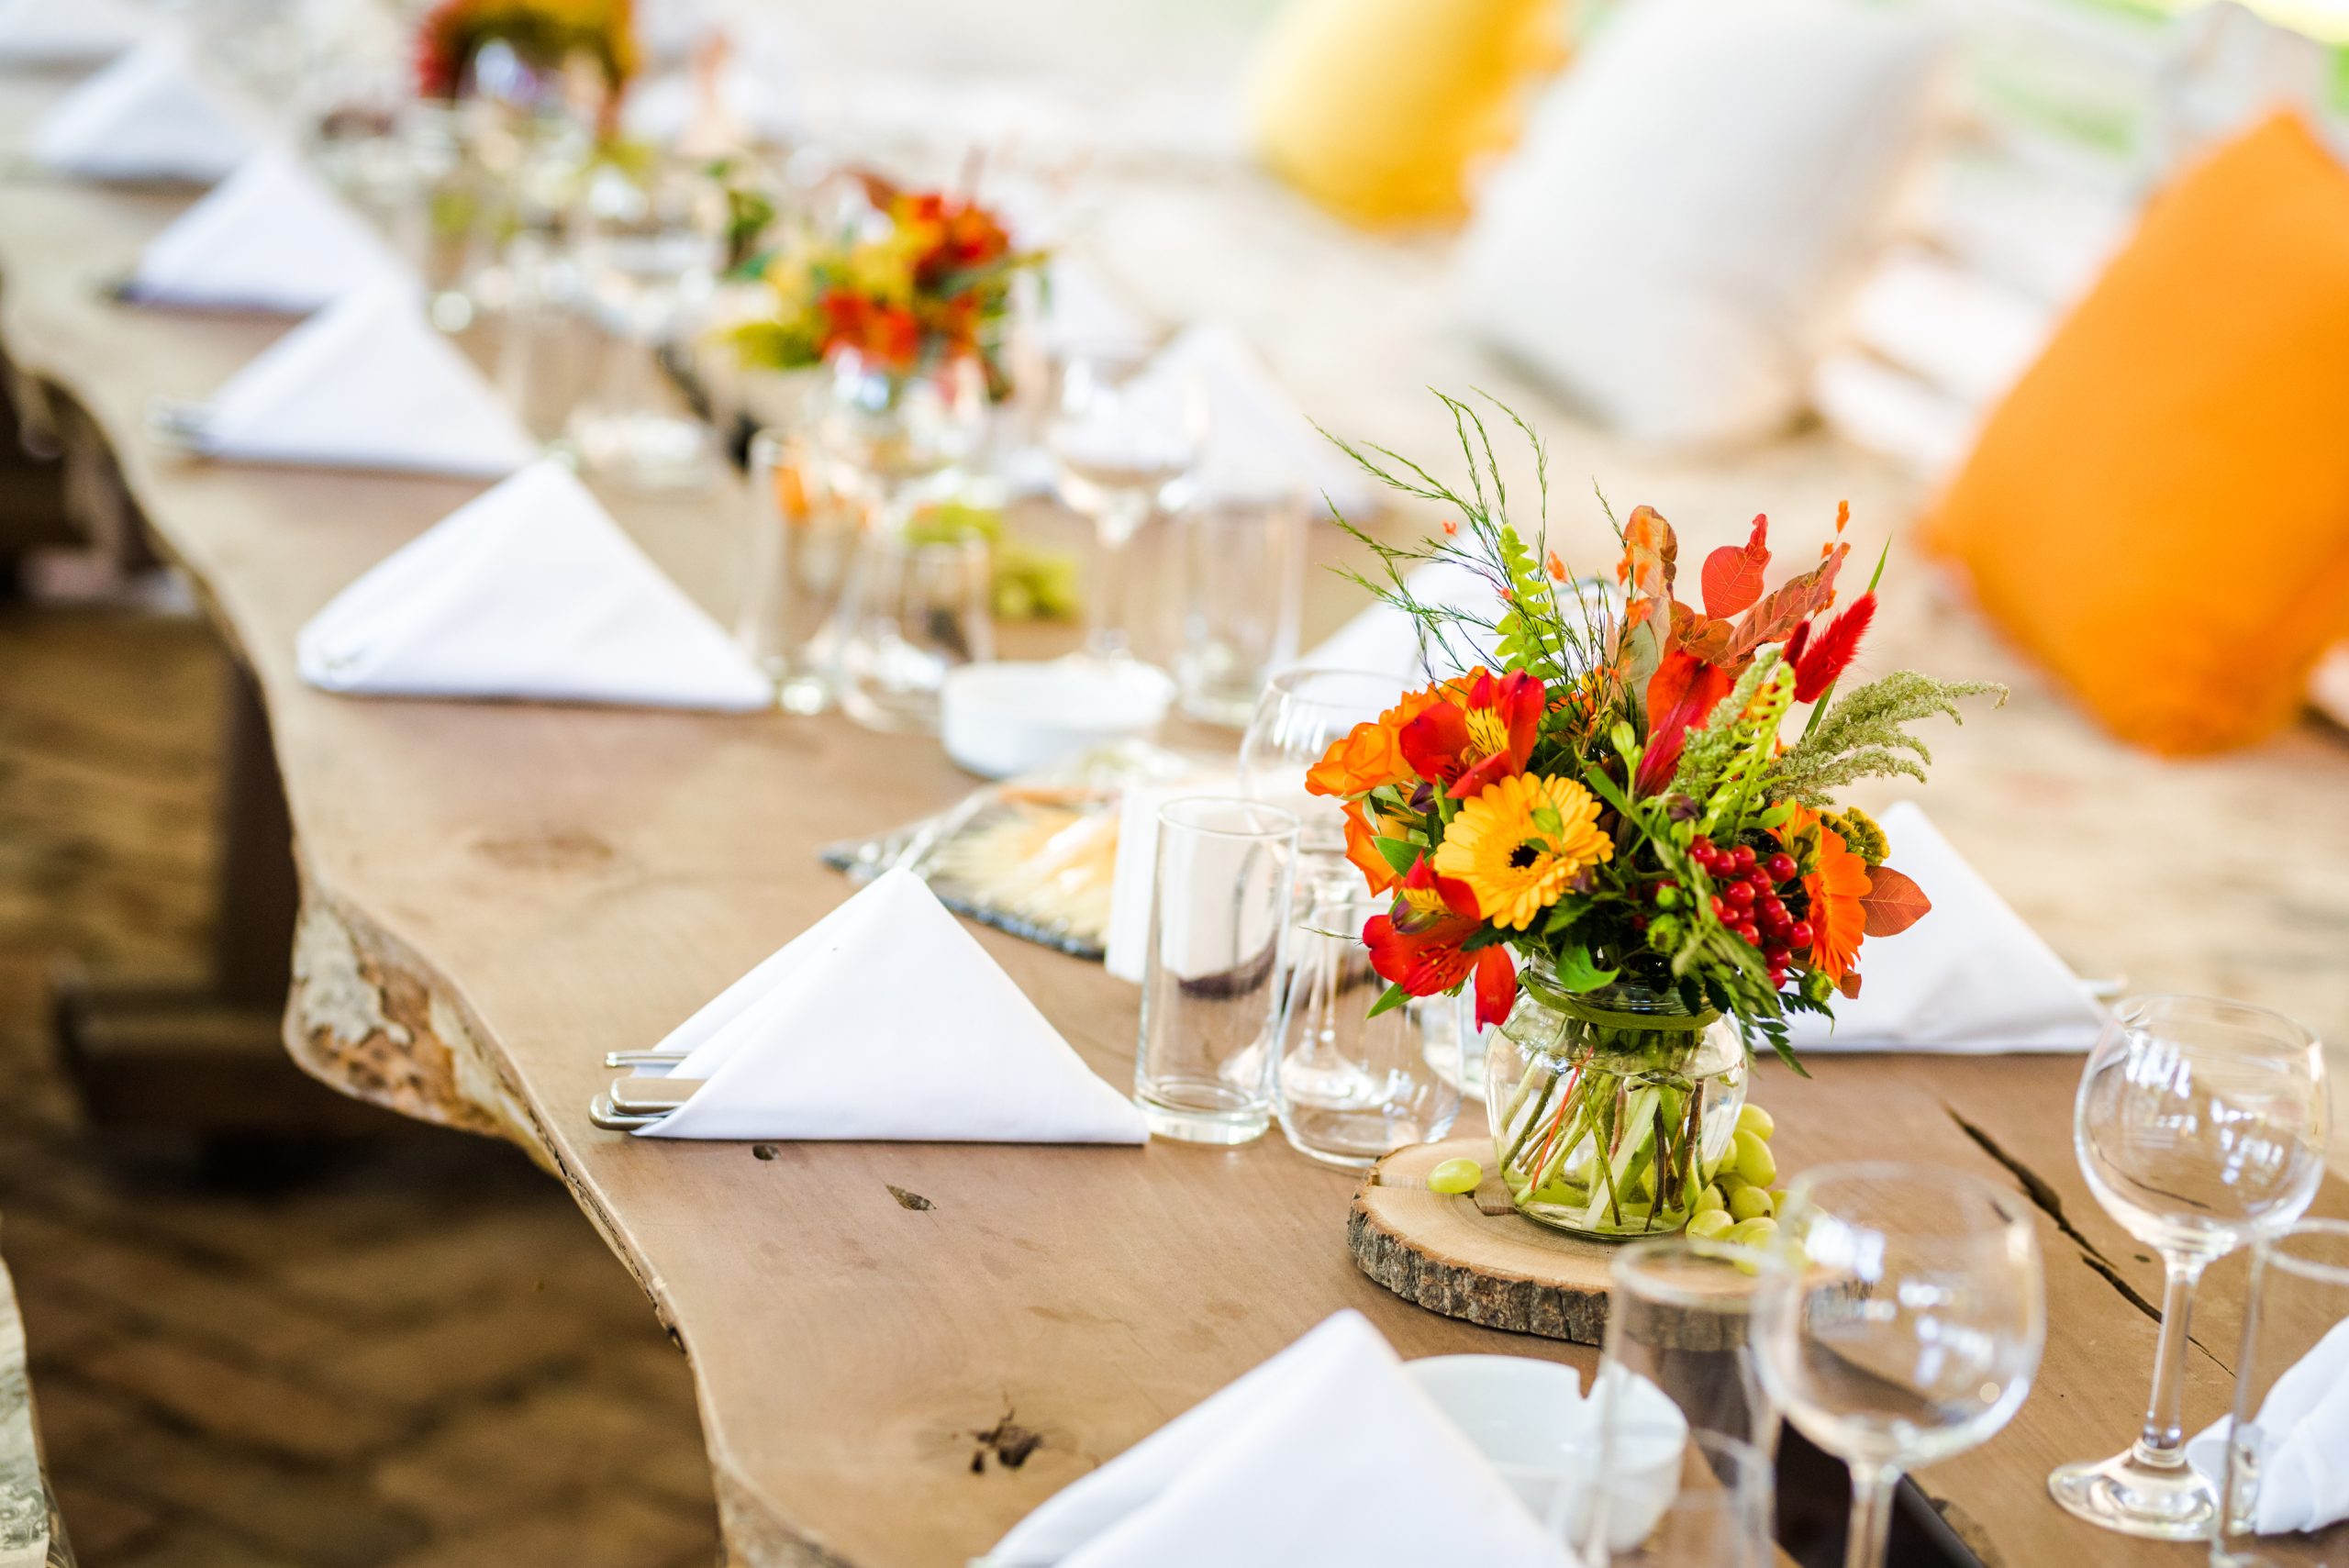 Hoe kun je bloemen op je feesttafel langer vers houden?